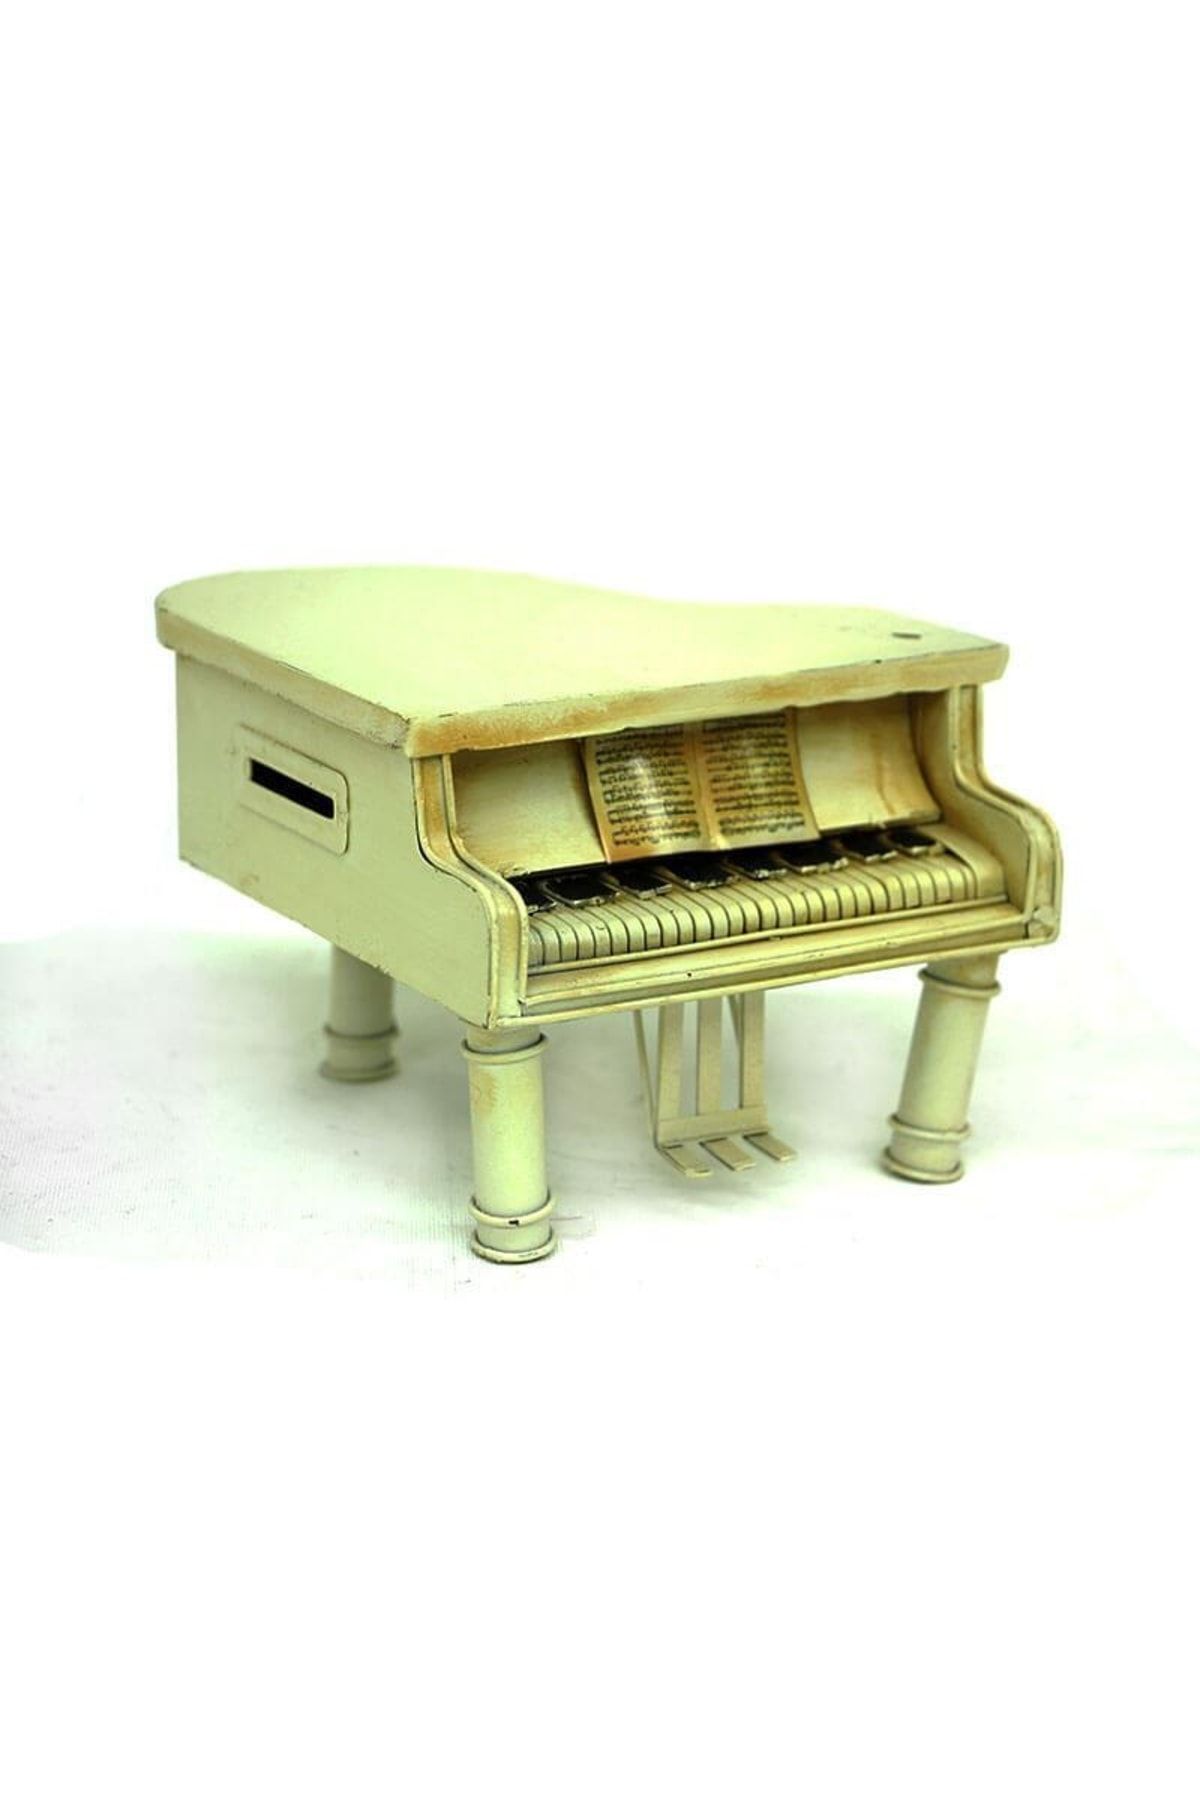 Mnk Dekoratif Metal Piyano Kumbara Vintage Biblo Hediyelik